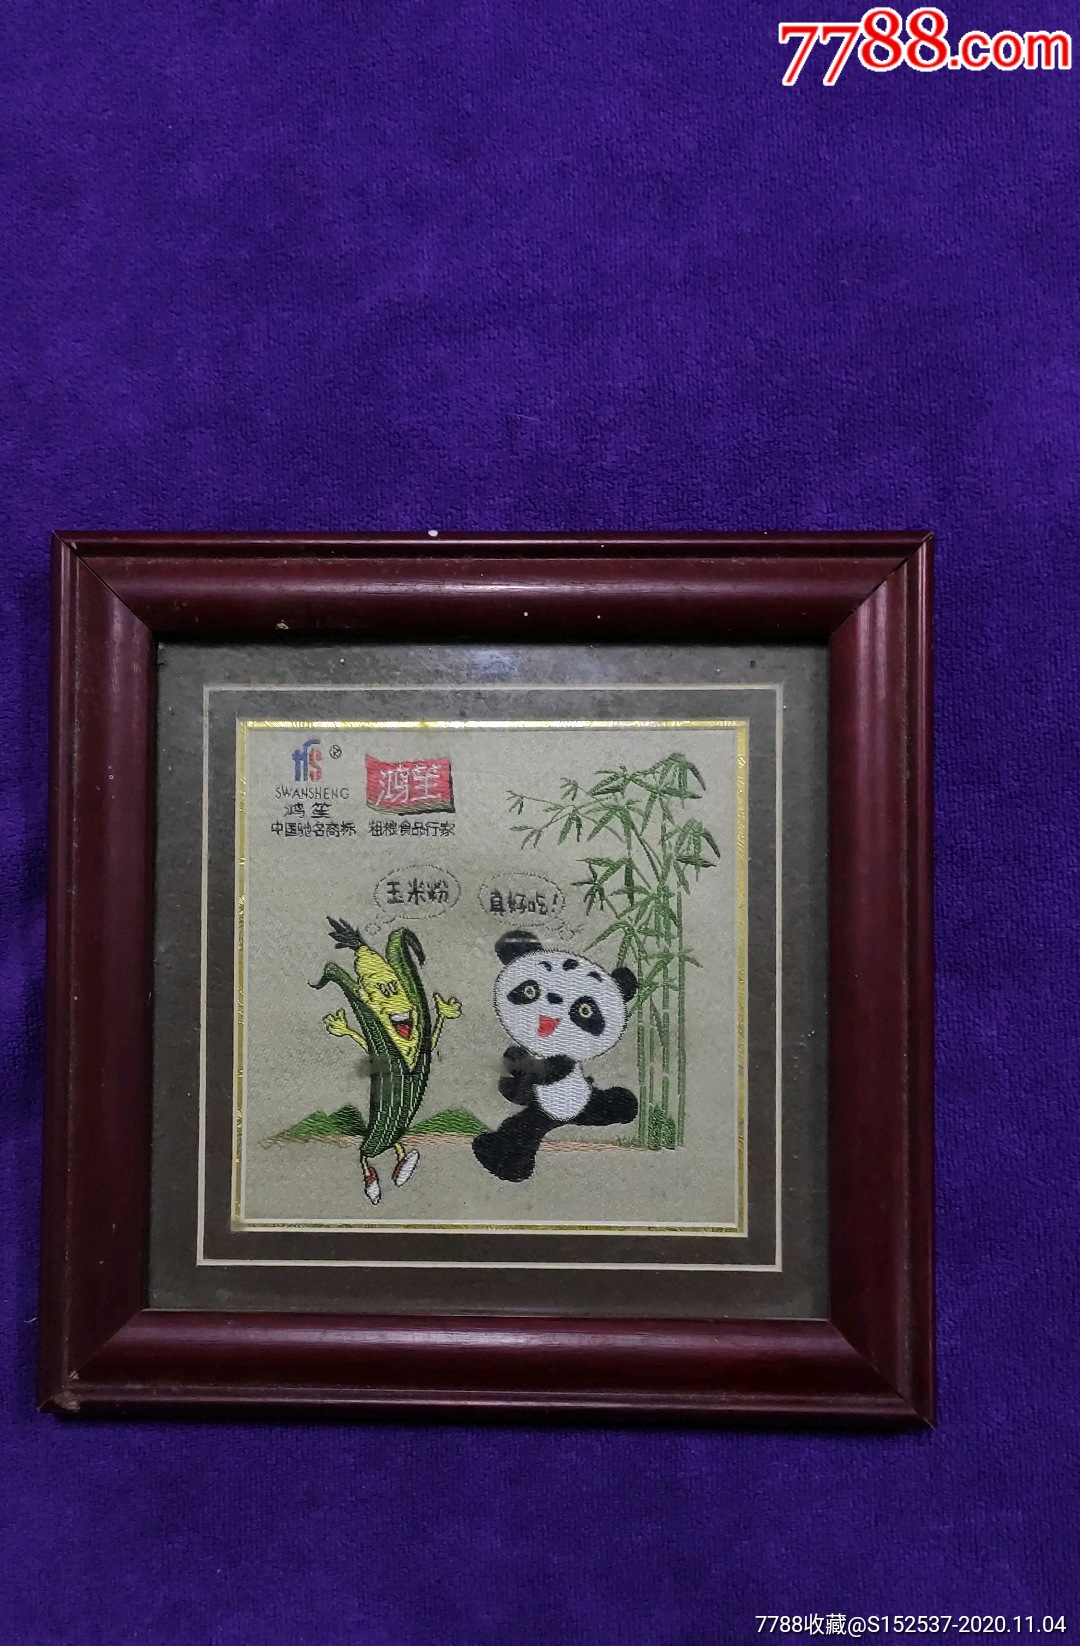 熊猫图案丝织画,鸿笙公司广告织画,带画框